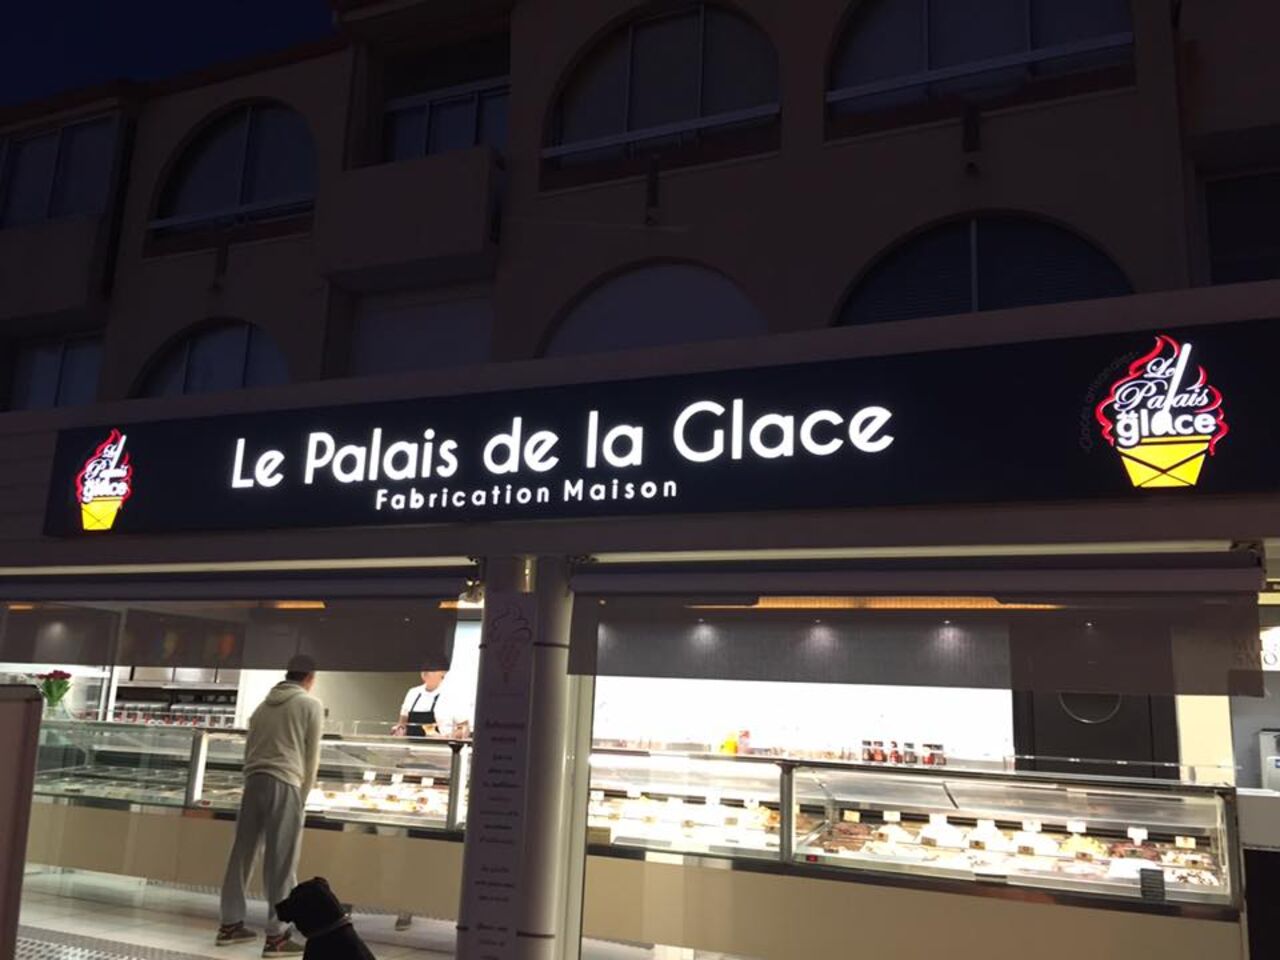 A photo of Le Palais de la Glace